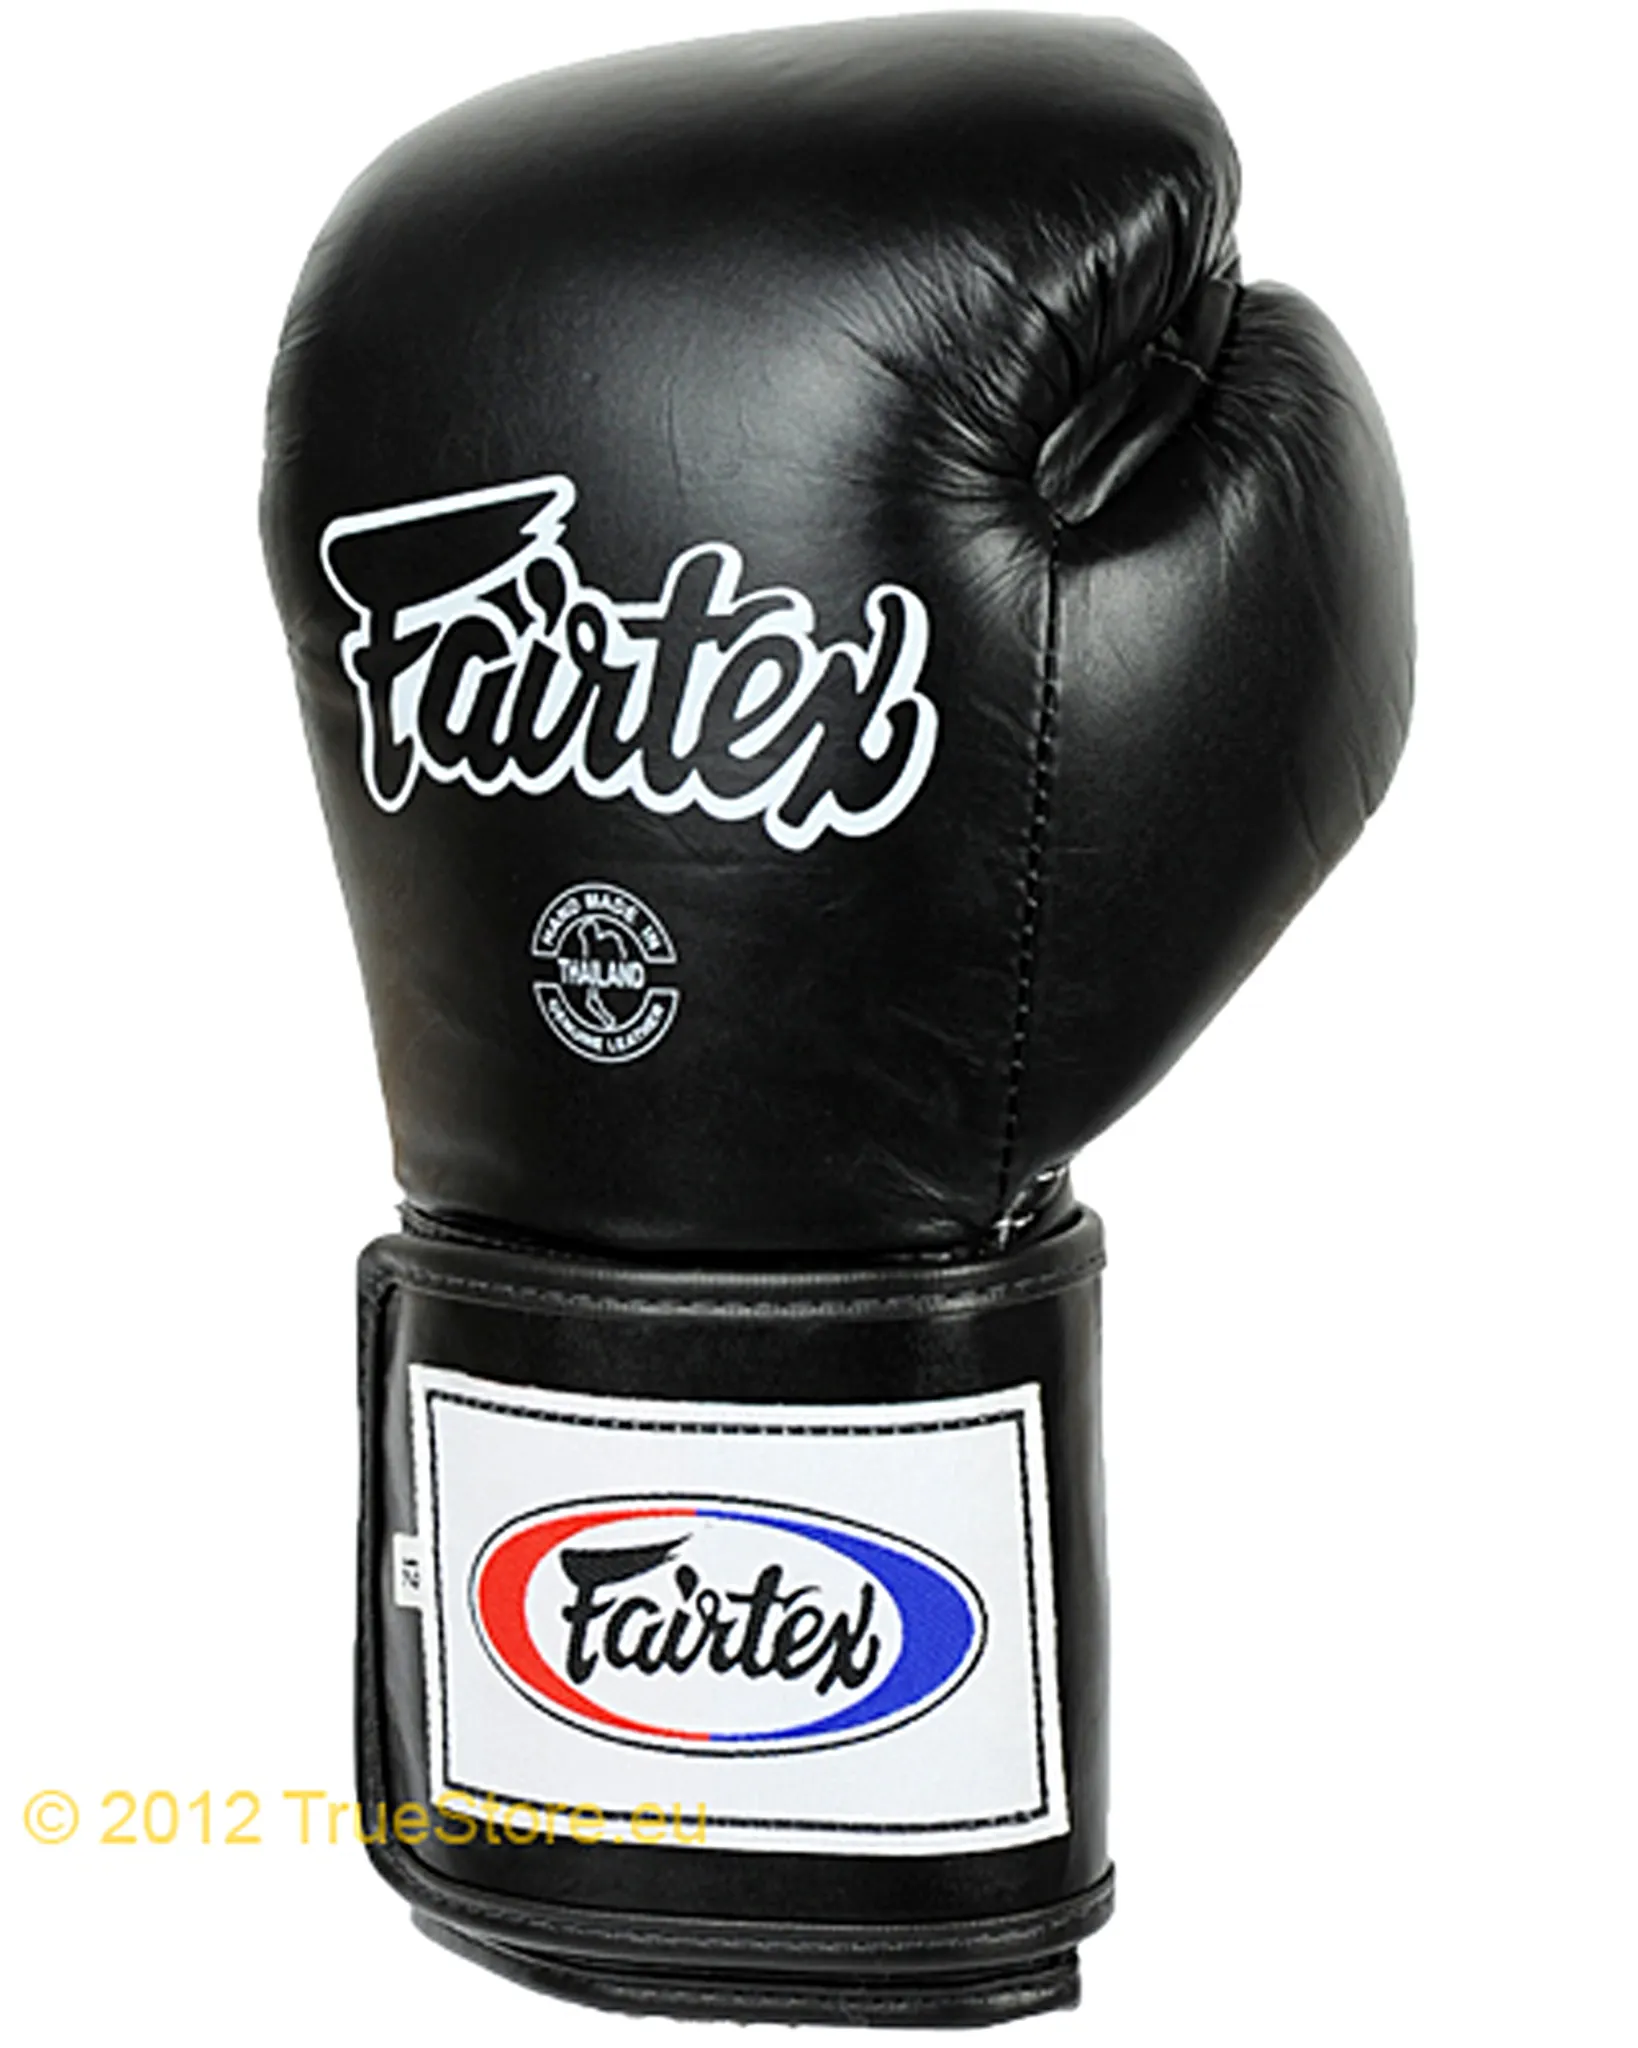 Fairtex Leder Super Sparring Boxhandschuhe